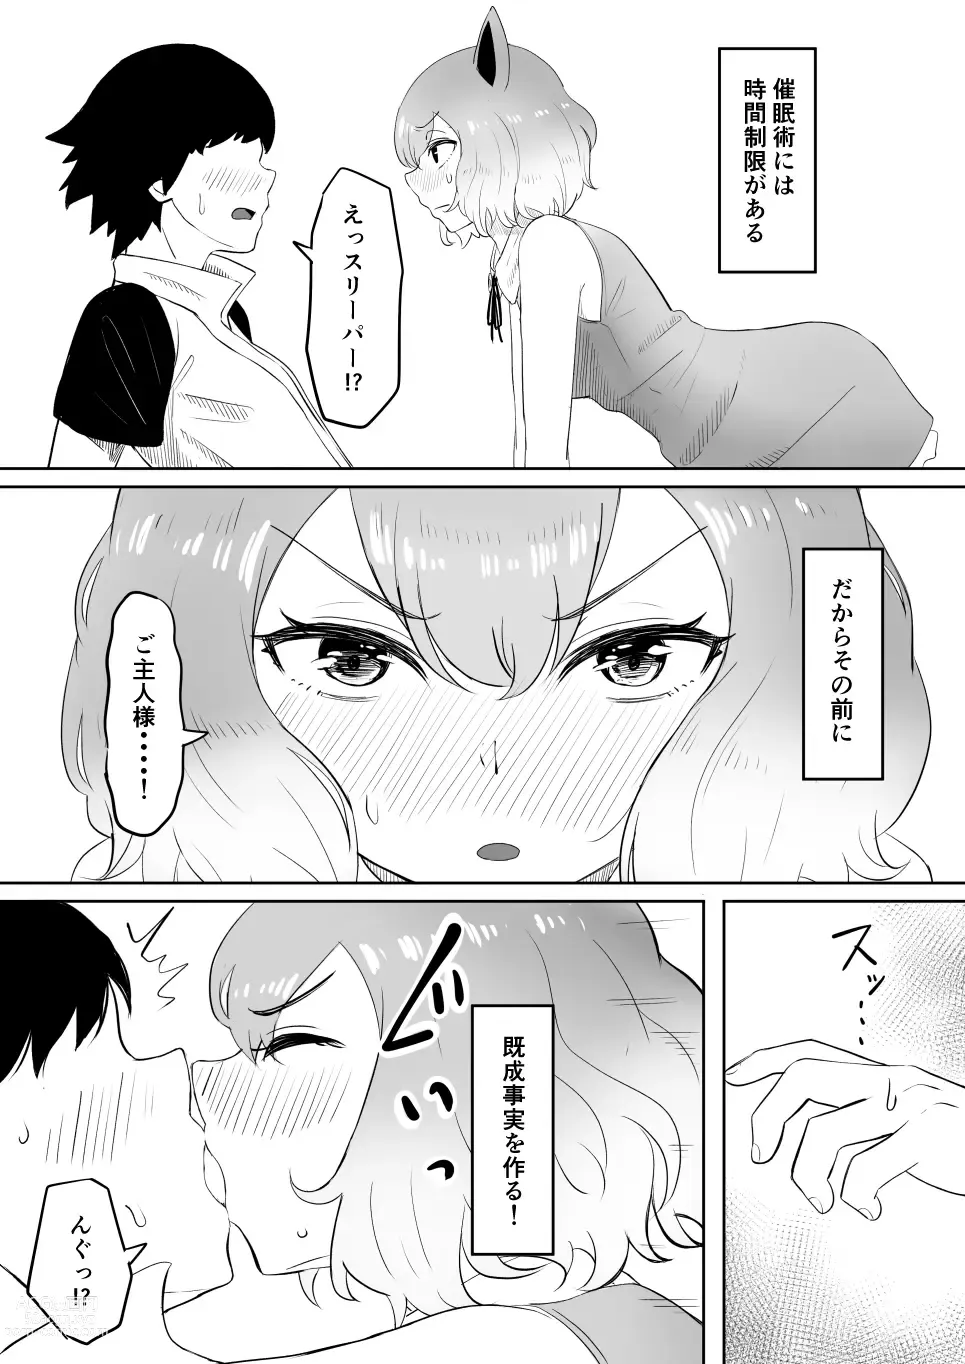 Page 17 of doujinshi Koi o Shita Sleeper-chan.